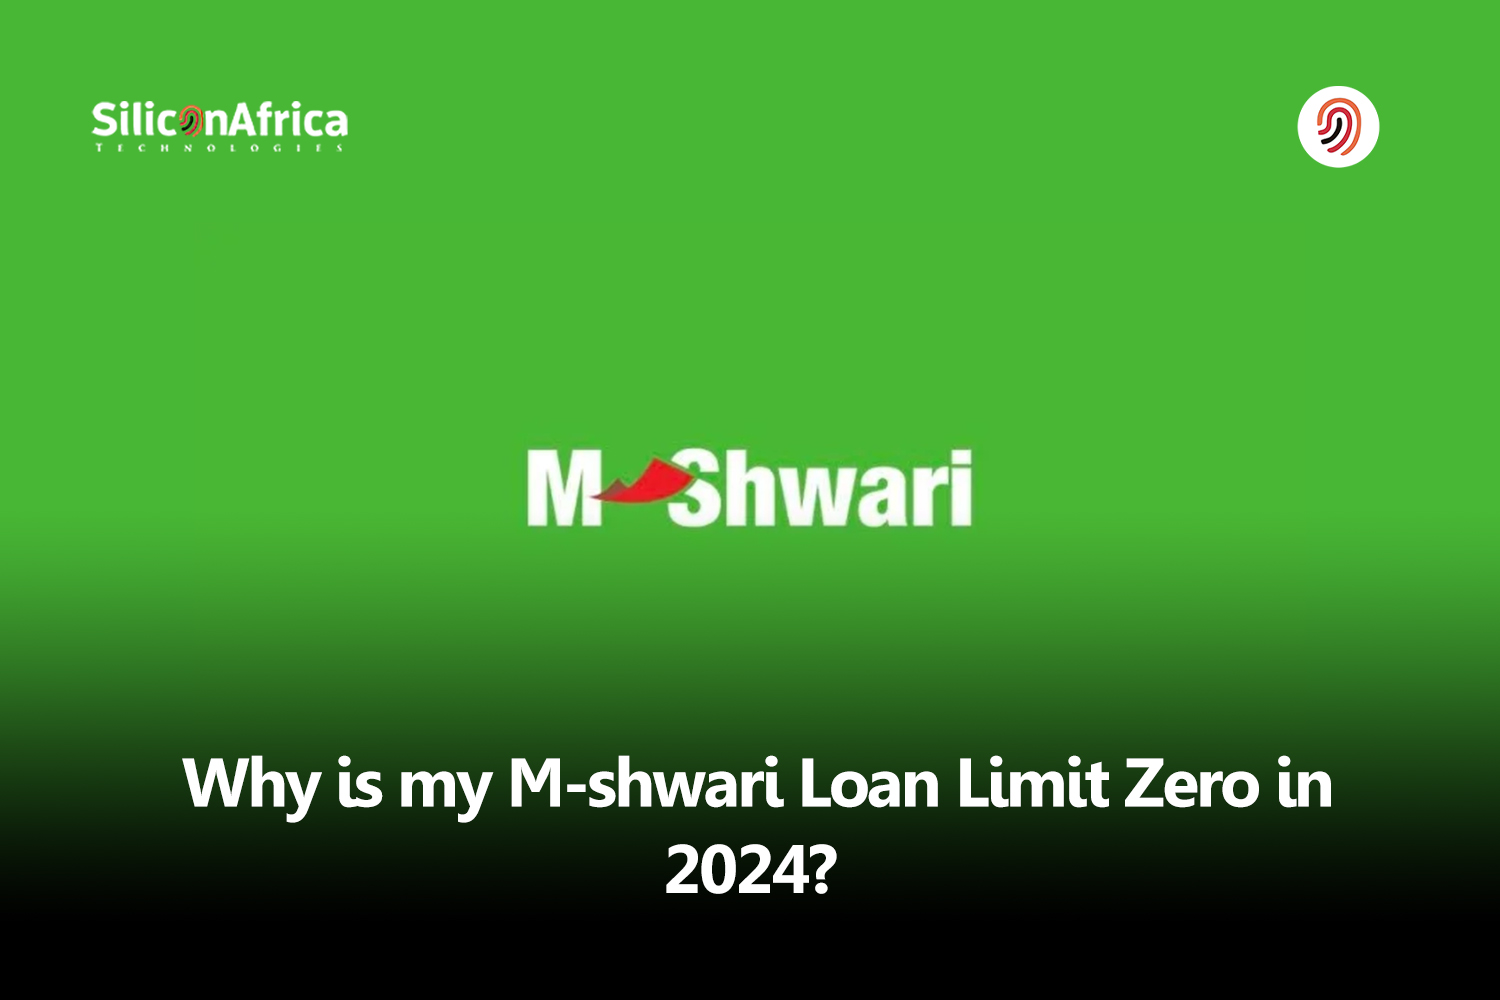 m-shwari loan limit